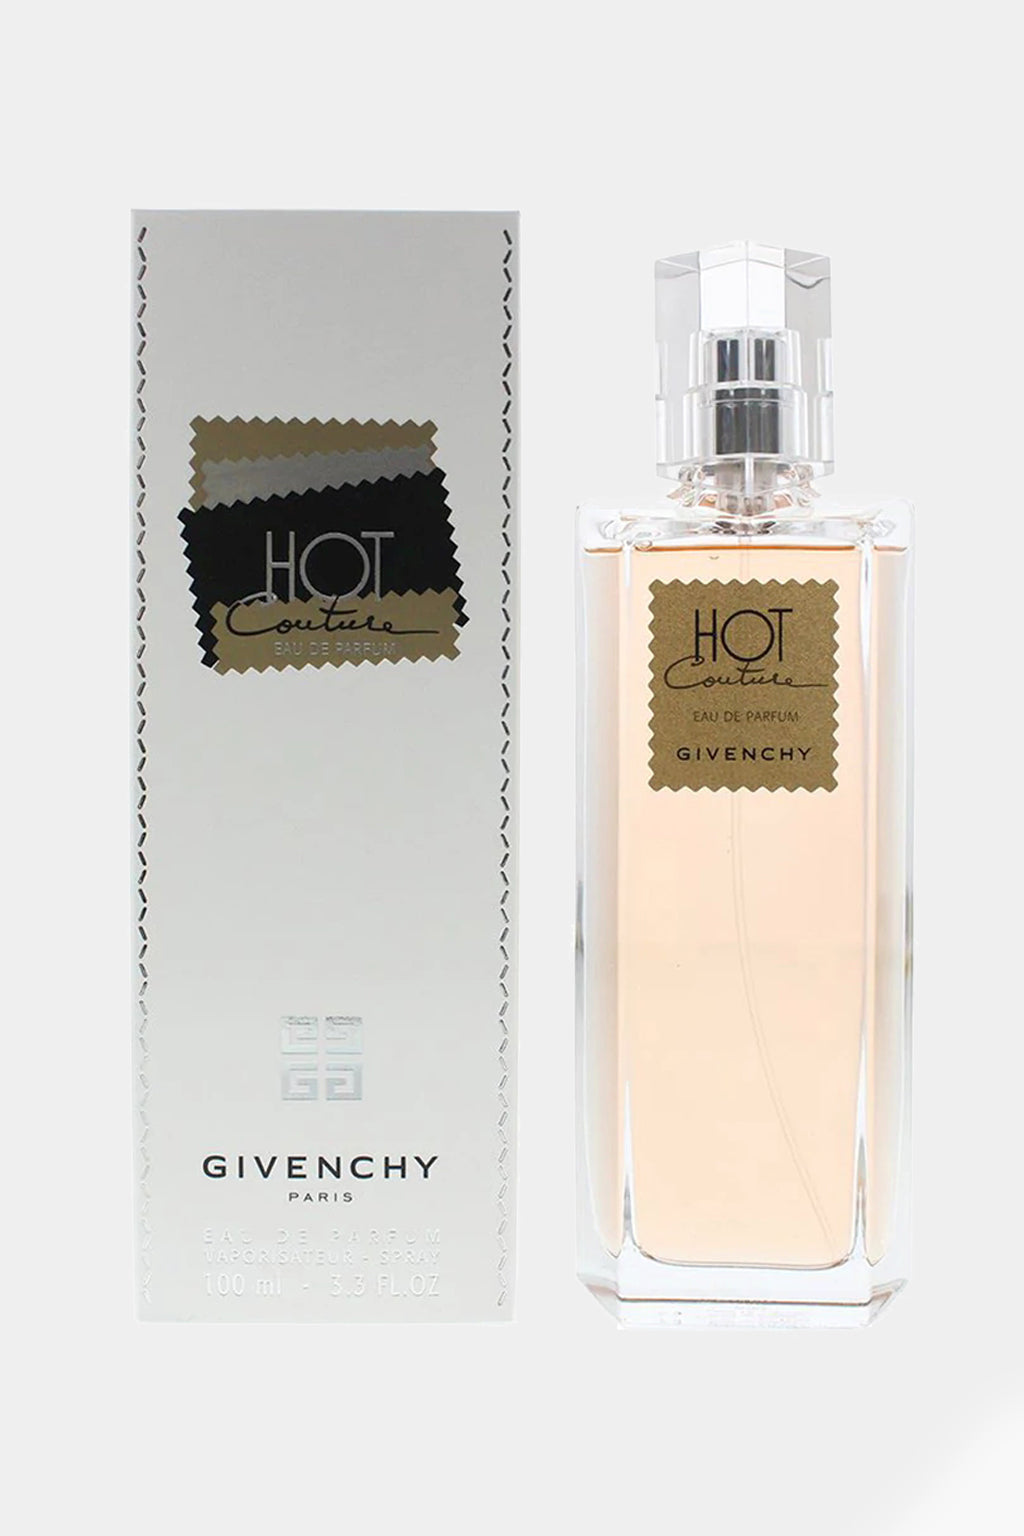 Givenchy - Hot Couture Eau de Parfum